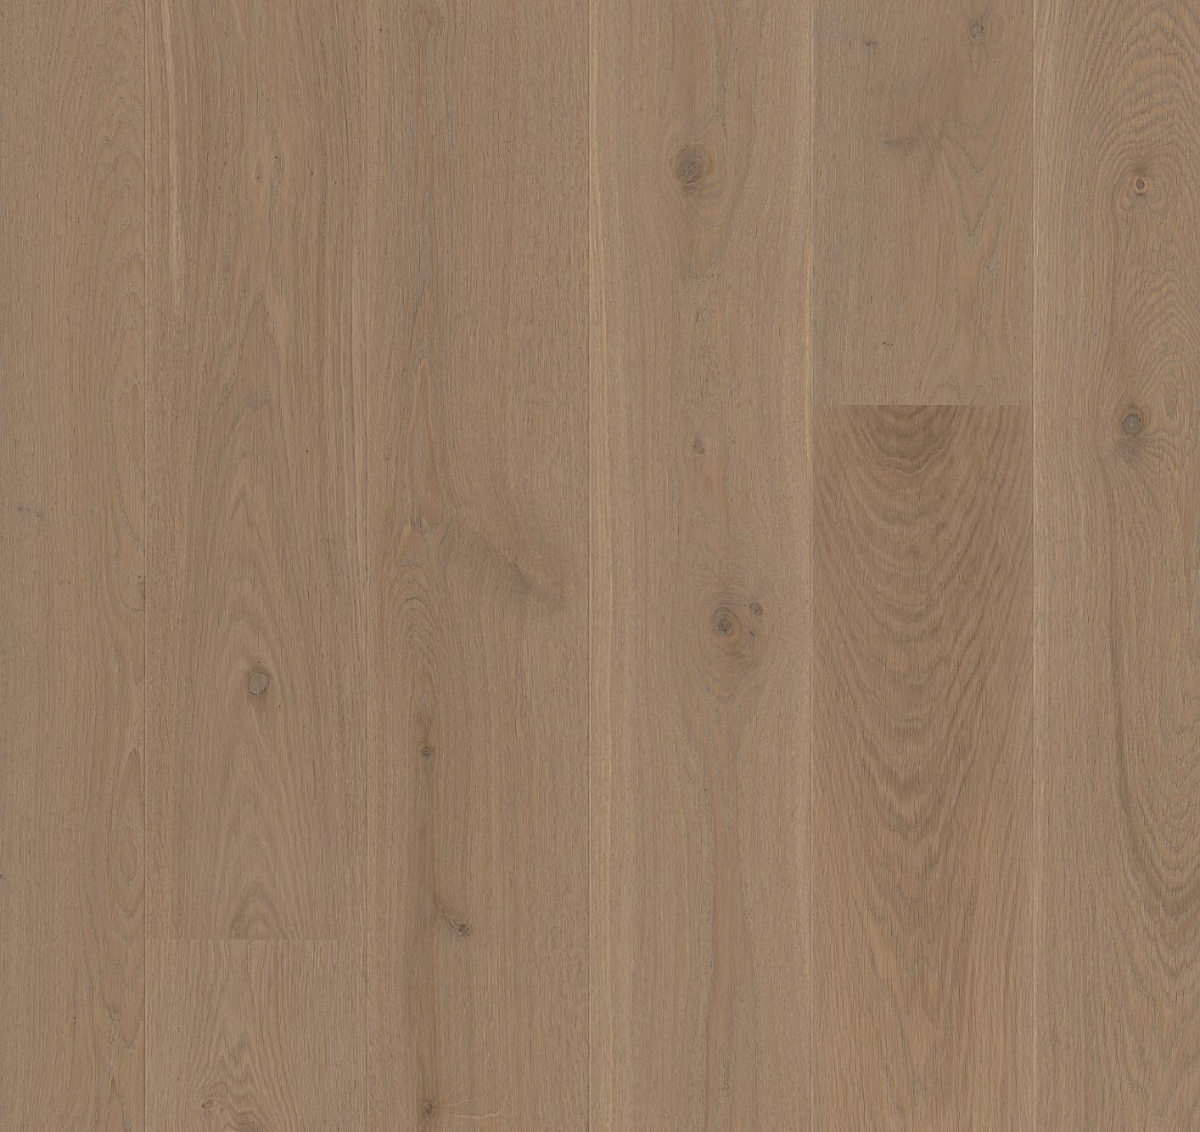 Full length engineered hardwood flooring linnea by stuga